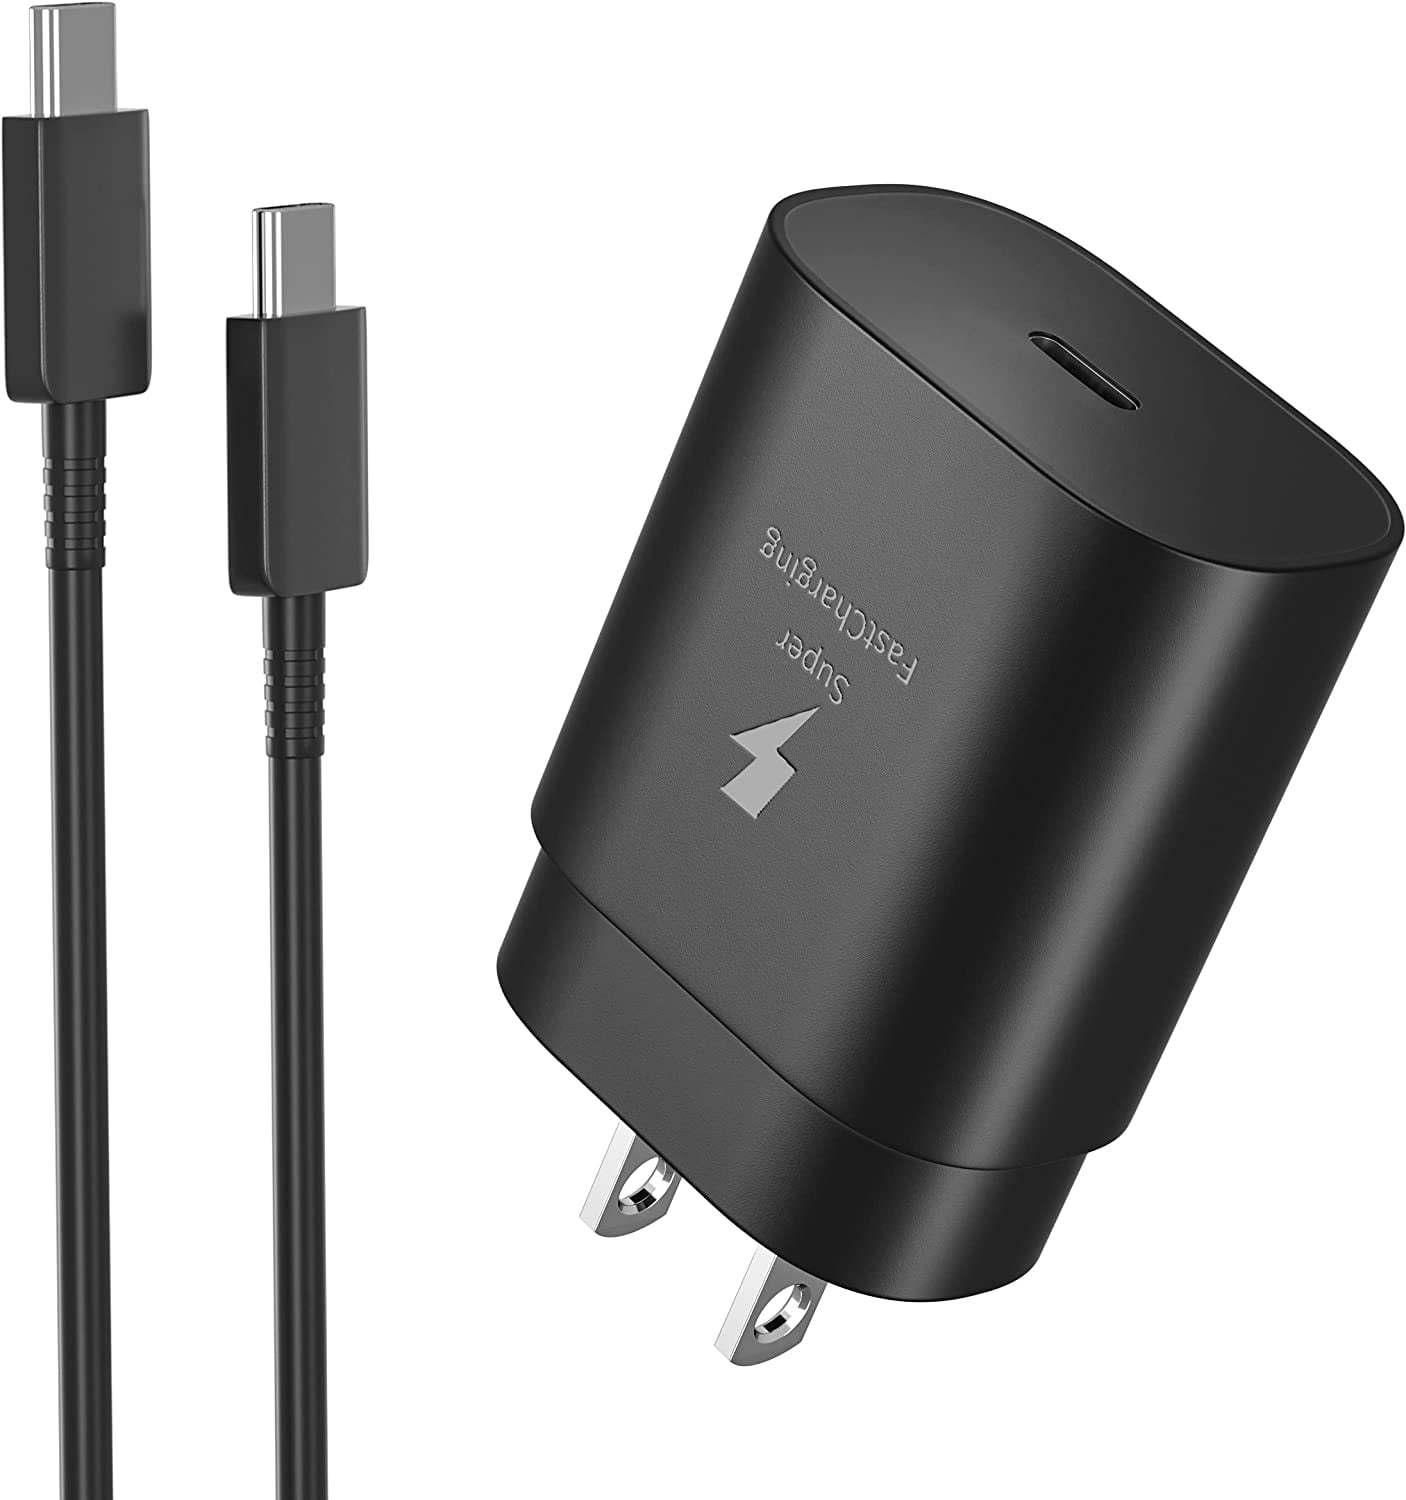 3.1A de doble puerto USB Coche Cargador Adaptador para Samsung/Apple iPhone 4s 5 6 iPad iPod 